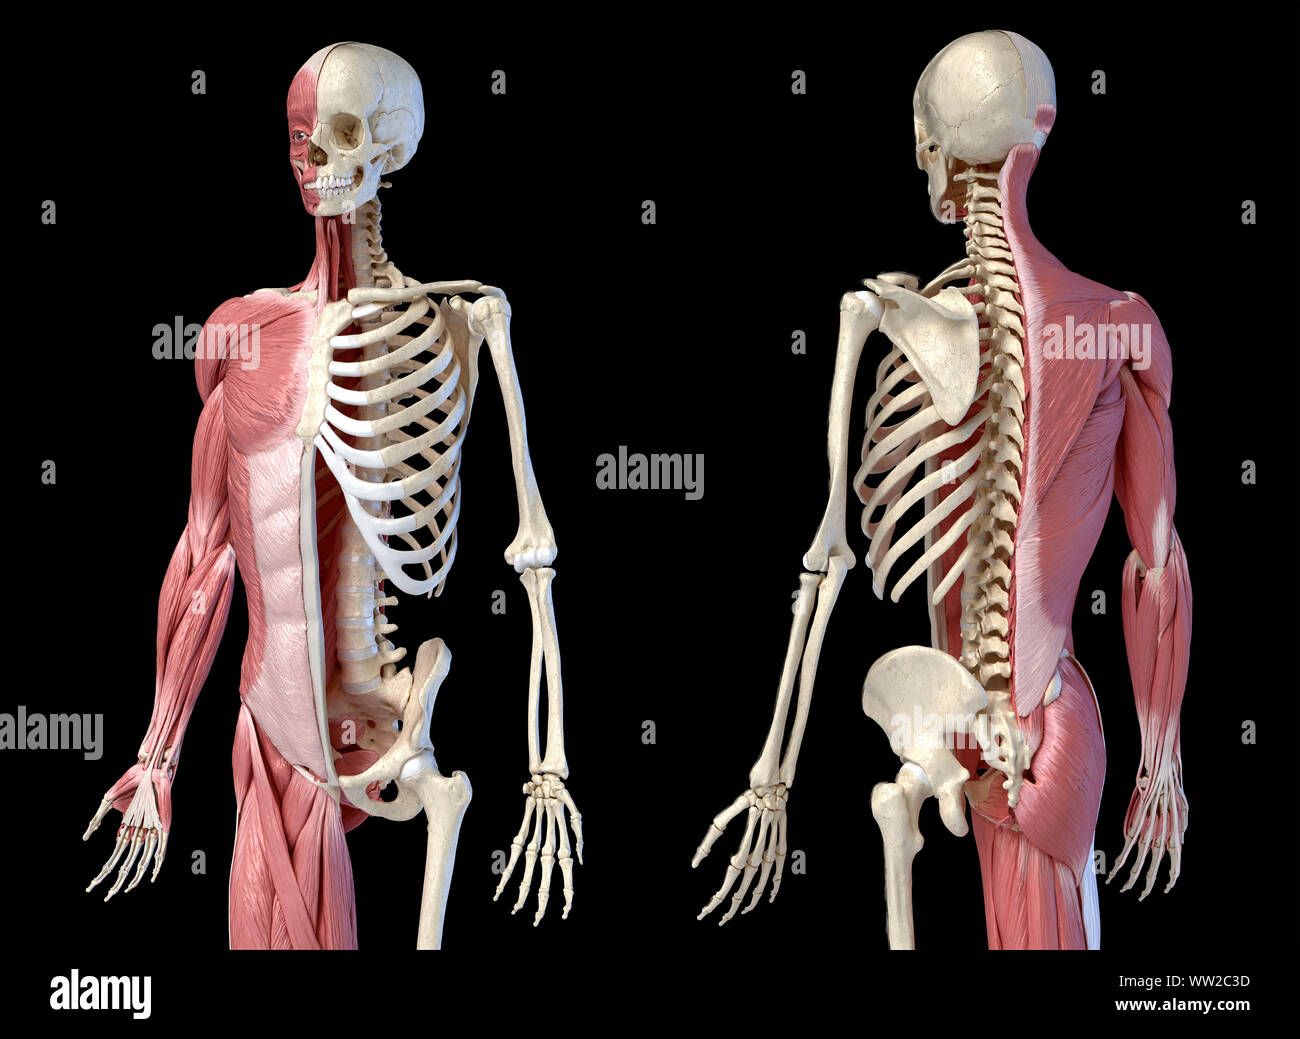 Die männliche Anatomie, 3/4 Abbildung Muskel- und Skeletterkrankungen Systemen für die Front- und Rückseite Perspektive. auf schwarzem Hintergrund. 3D-Anatomie Illustration. Stockfoto